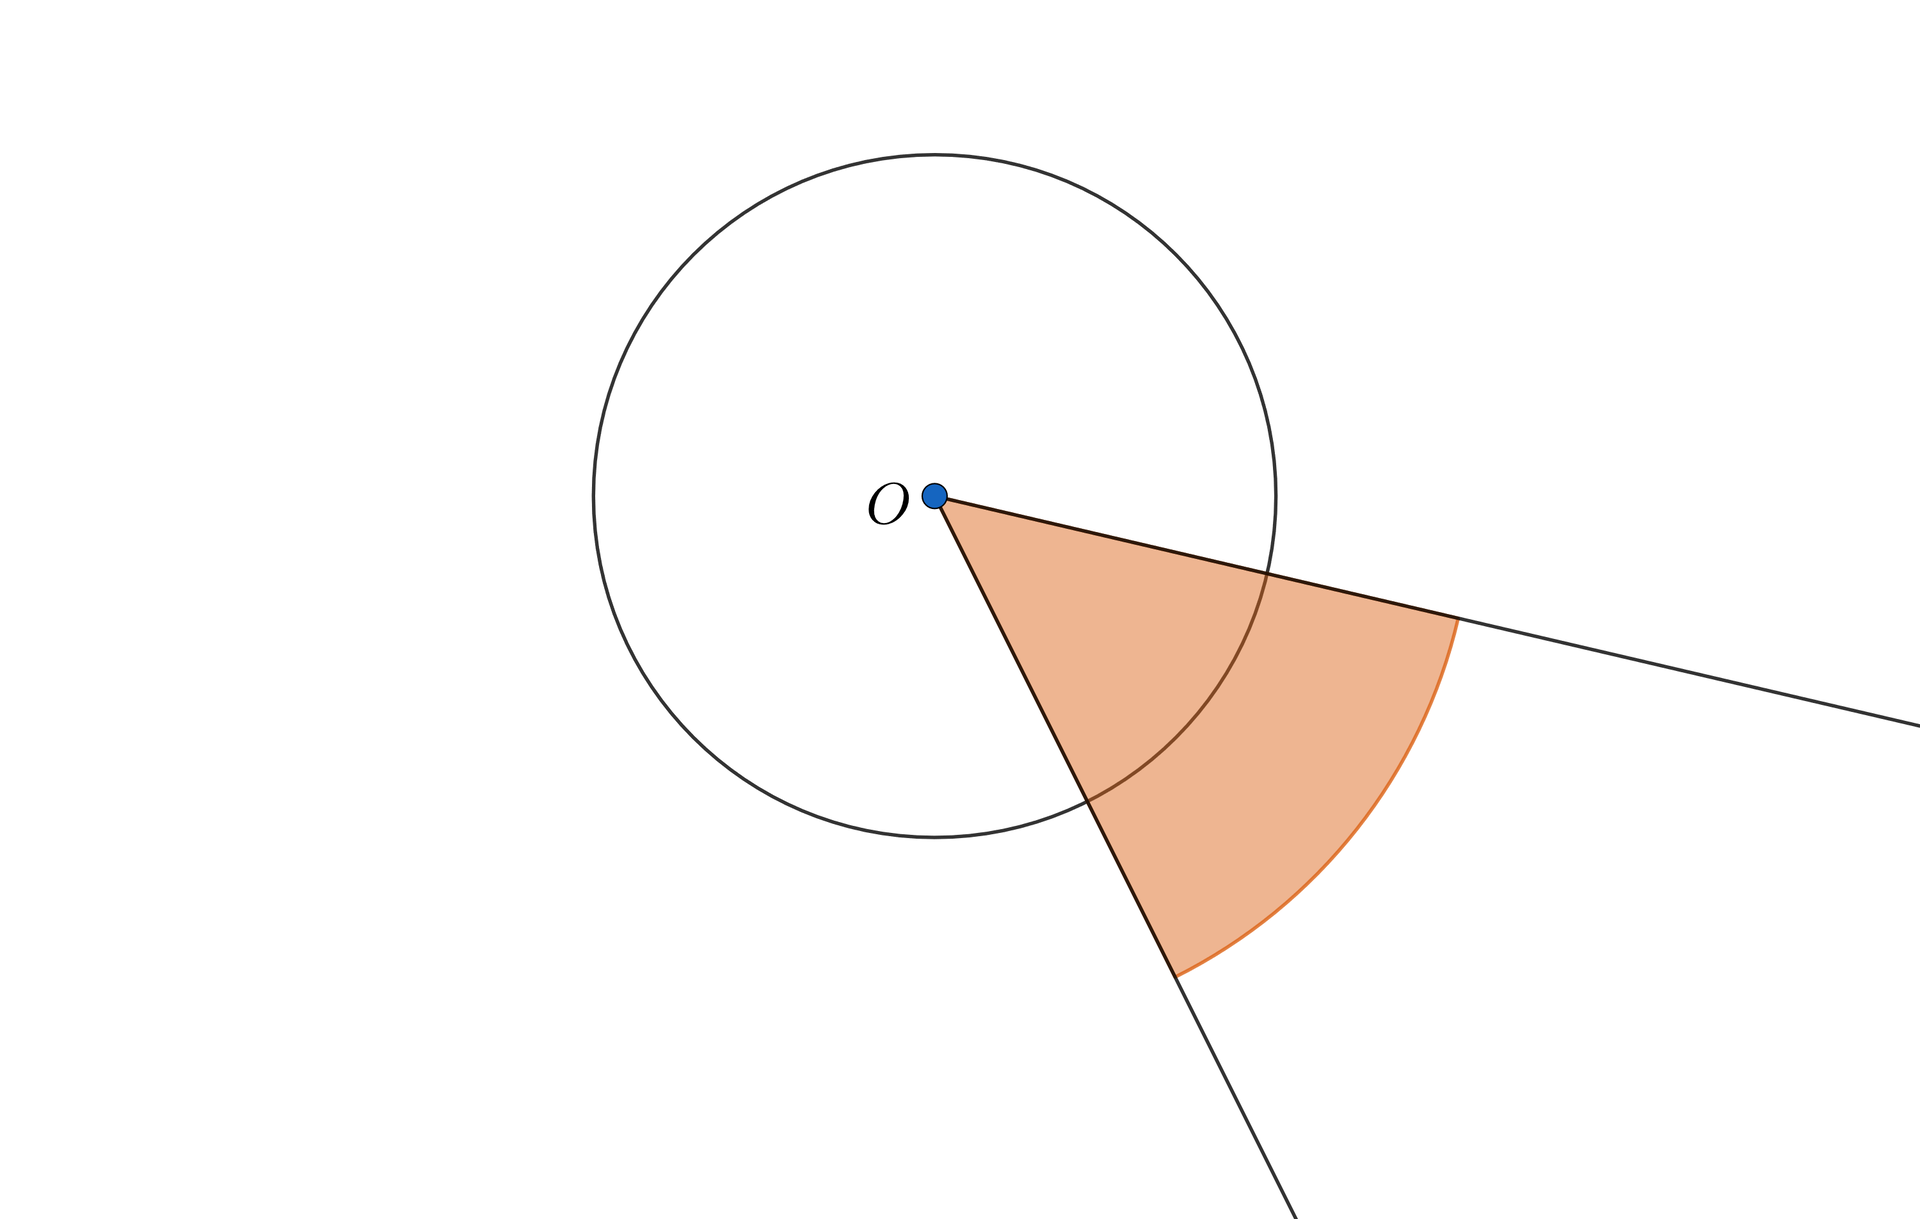 Ilustracja przedstawia okrąg o środku w punkcie O, z którego poprowadzono dwie półproste. Zaznaczono kąt ostry między półprostymi.